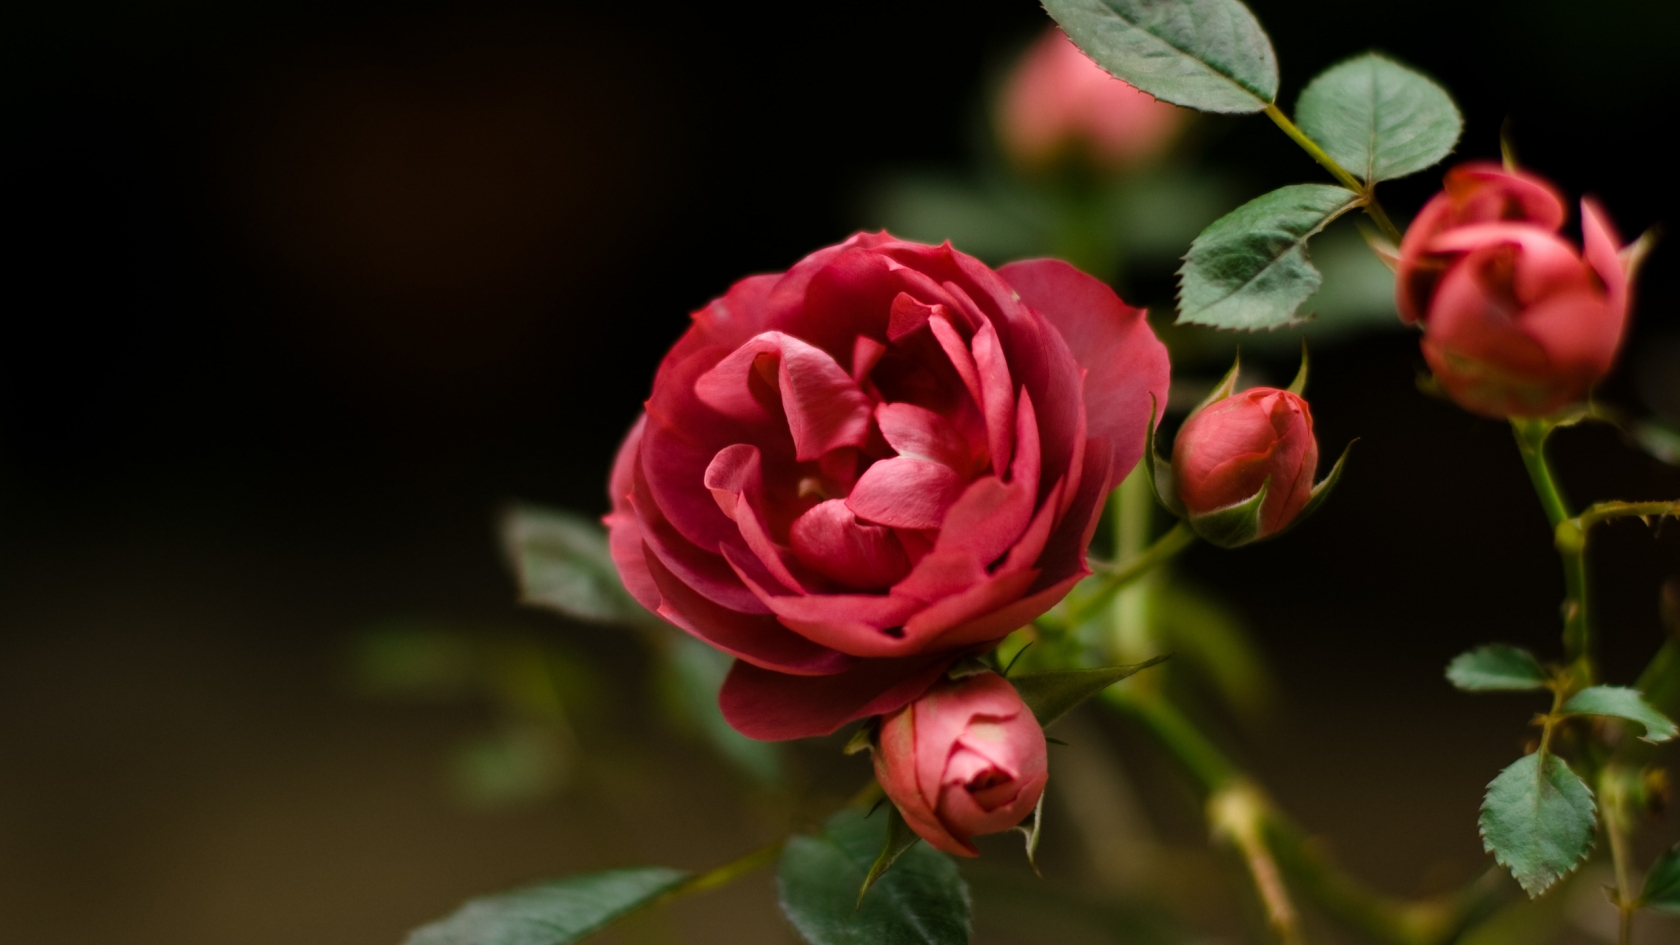 Rose Flower for 1680 x 945 HDTV resolution